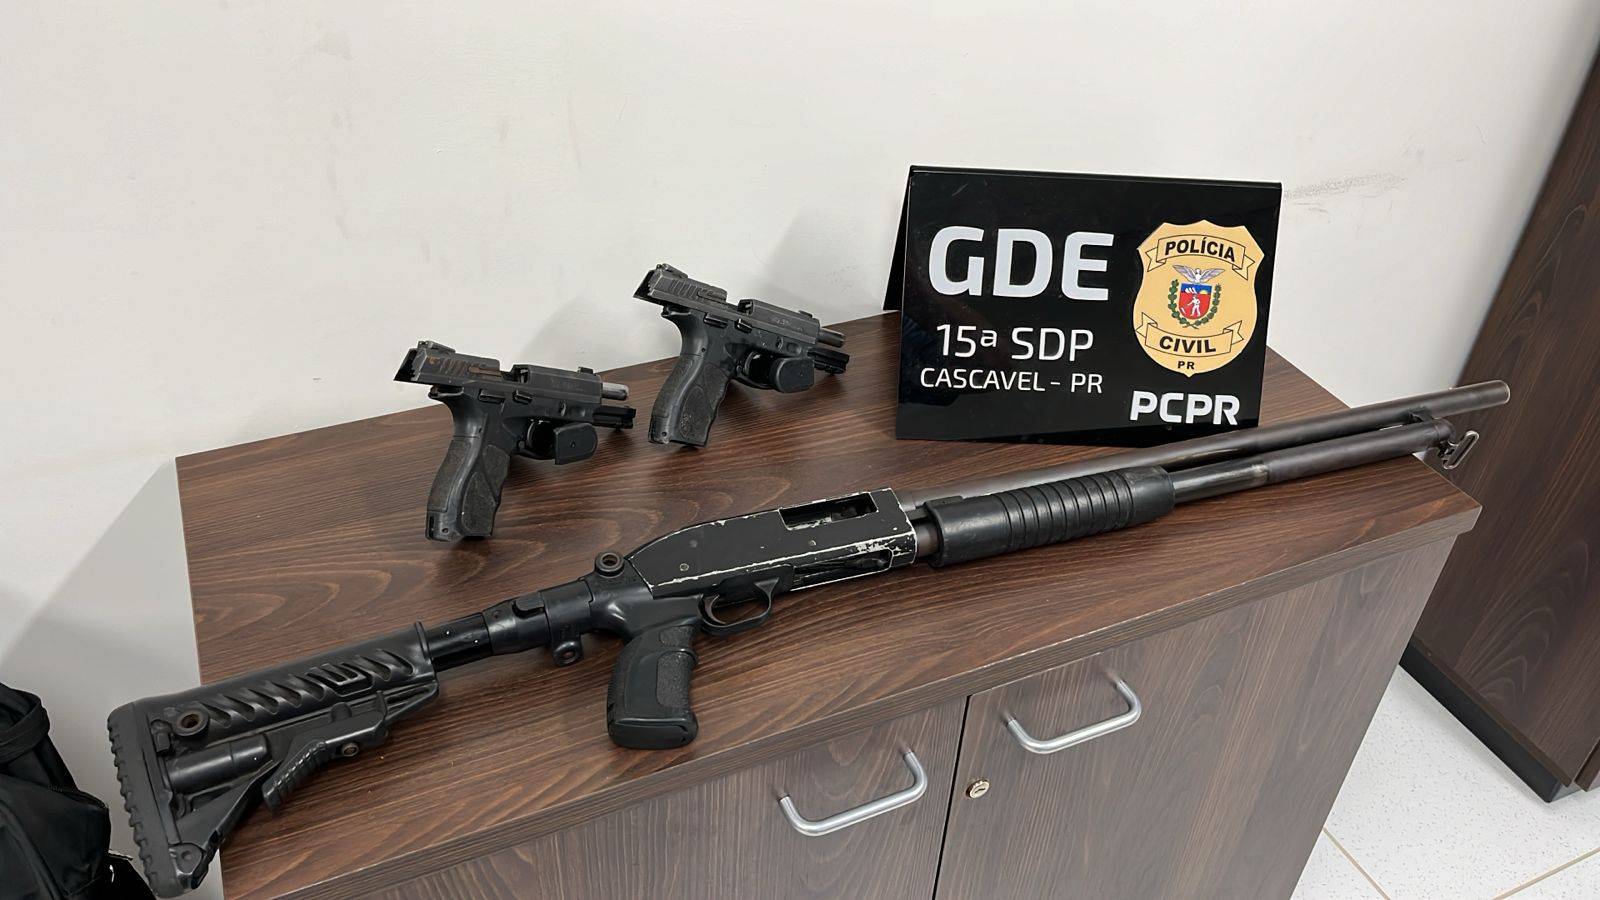 GDE da Polícia Civil recupera armas roubadas em assalto na BR-369 em Cascavel